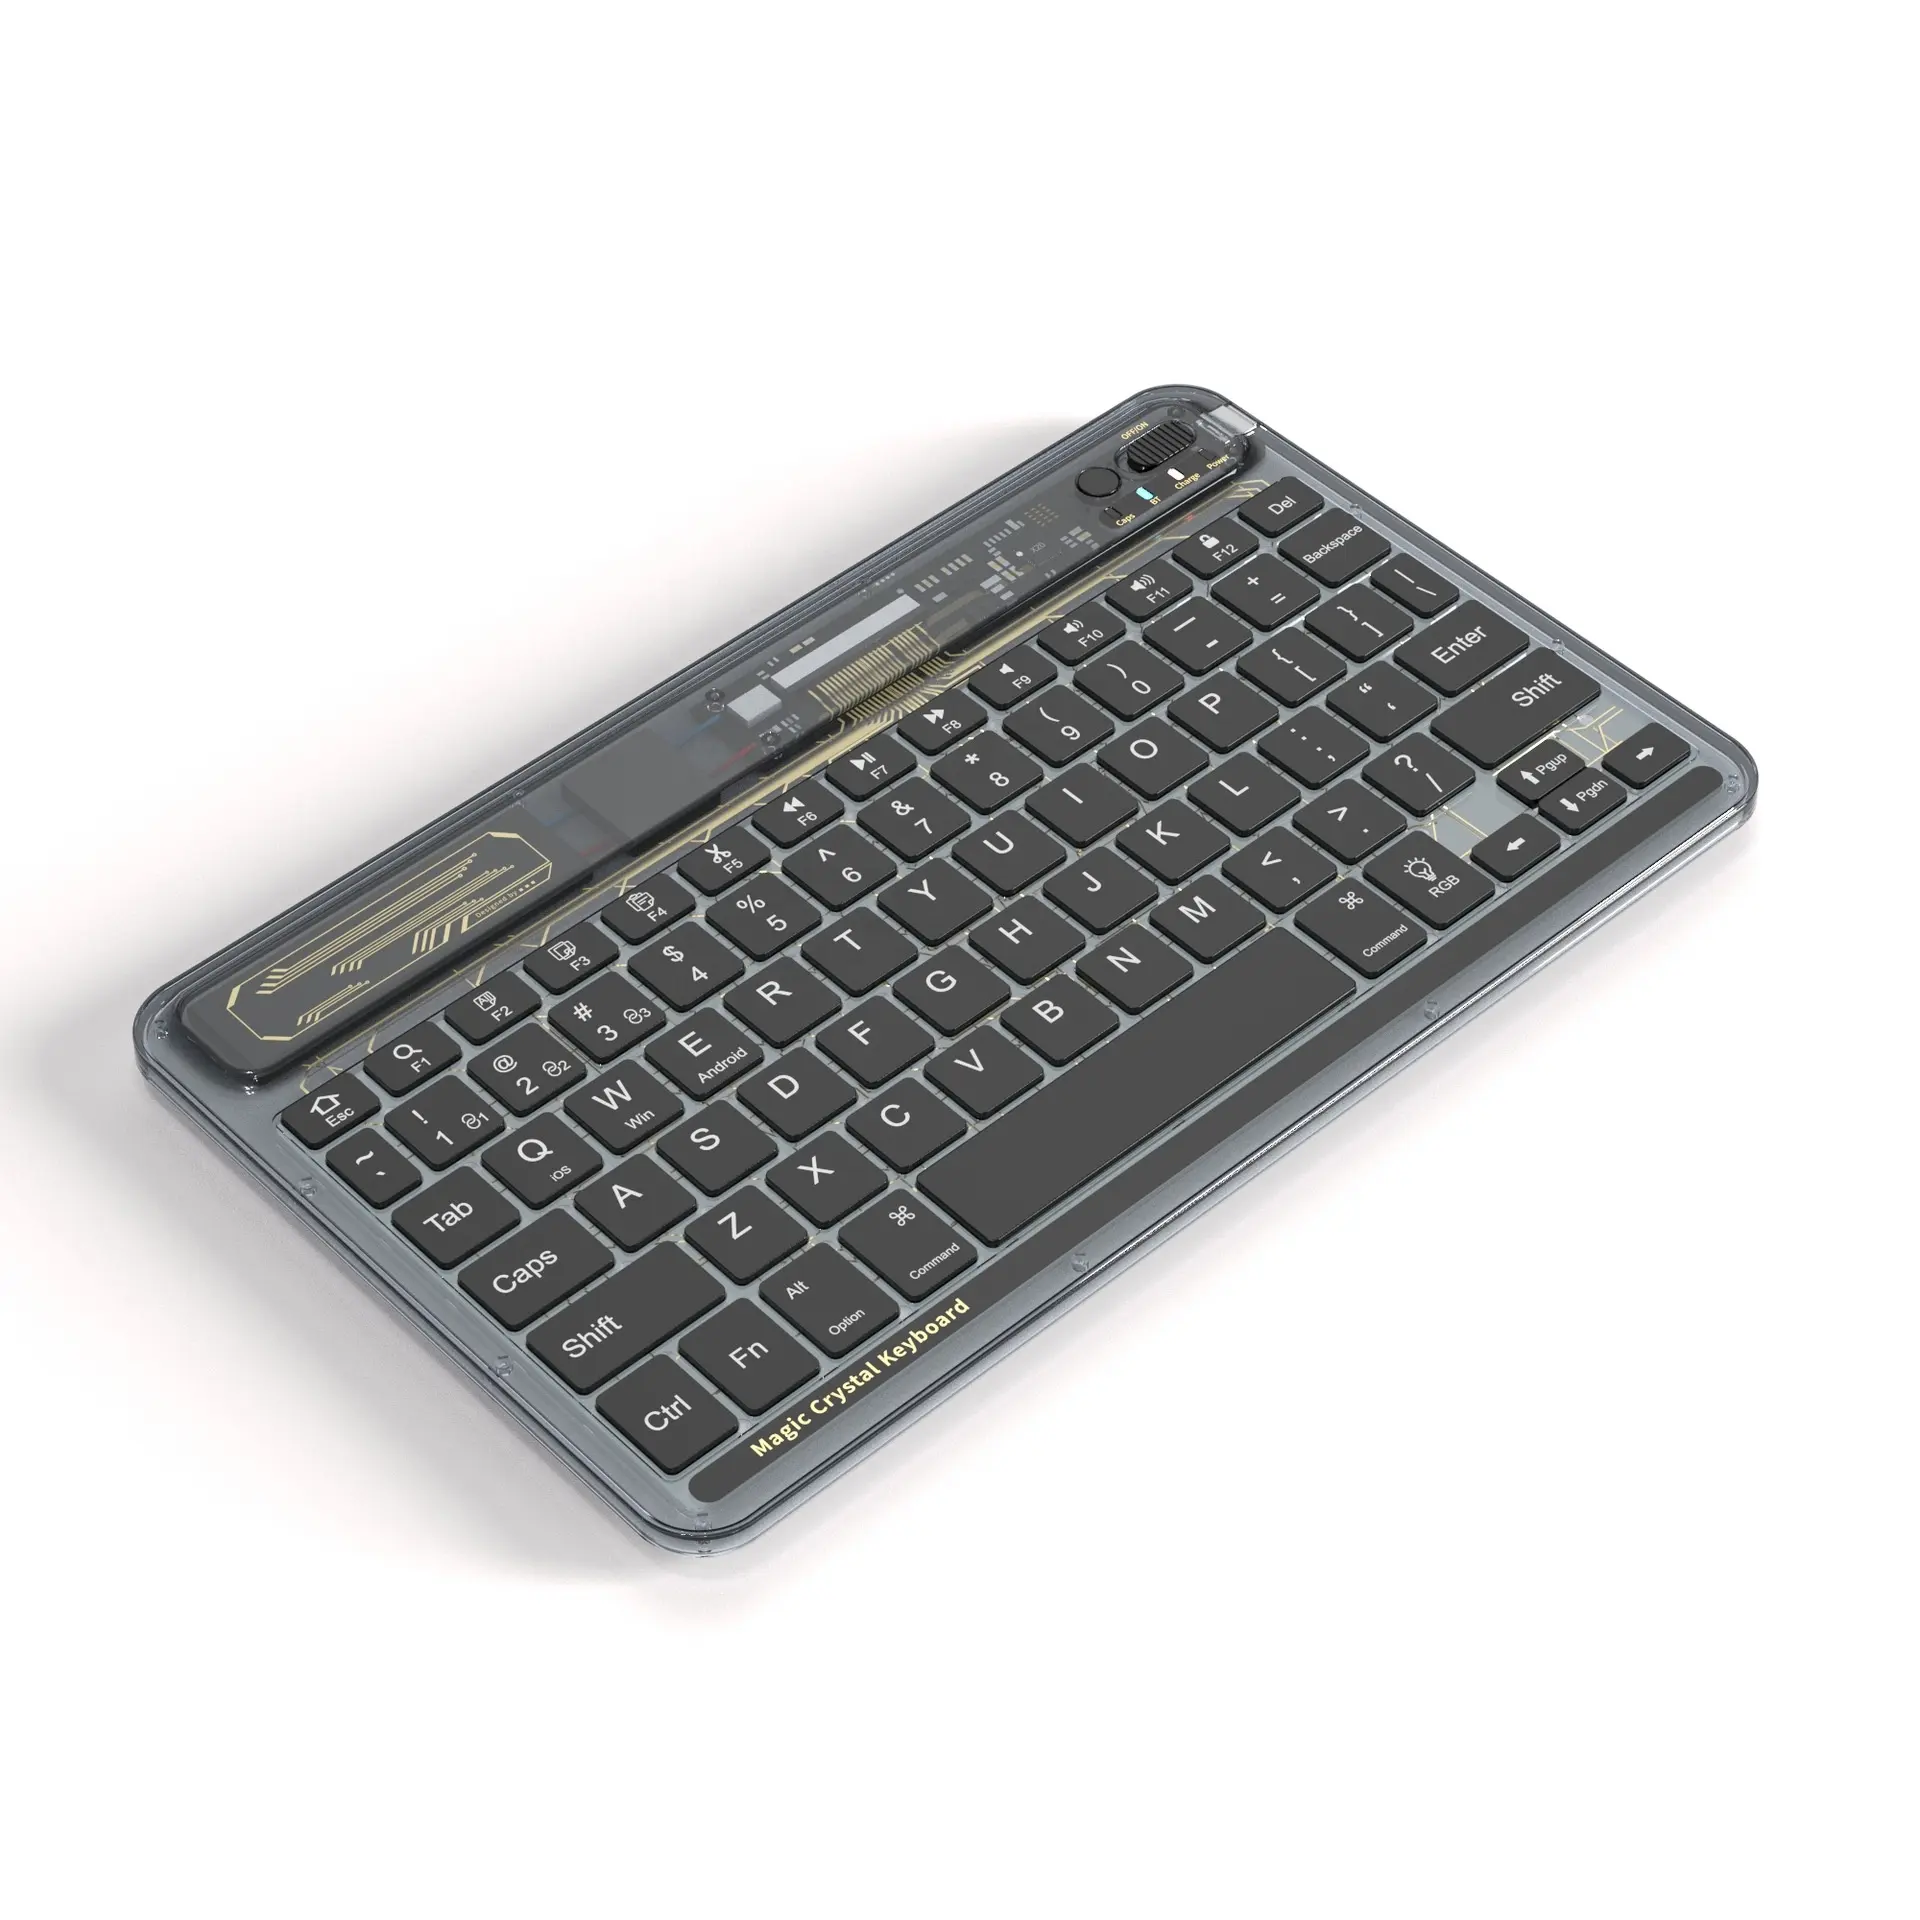 Tableta plana inalámbrica retroiluminada, tablet portátil recargable con teclado transparente para escribir, para Android/ IOS/ Wins ipad 10